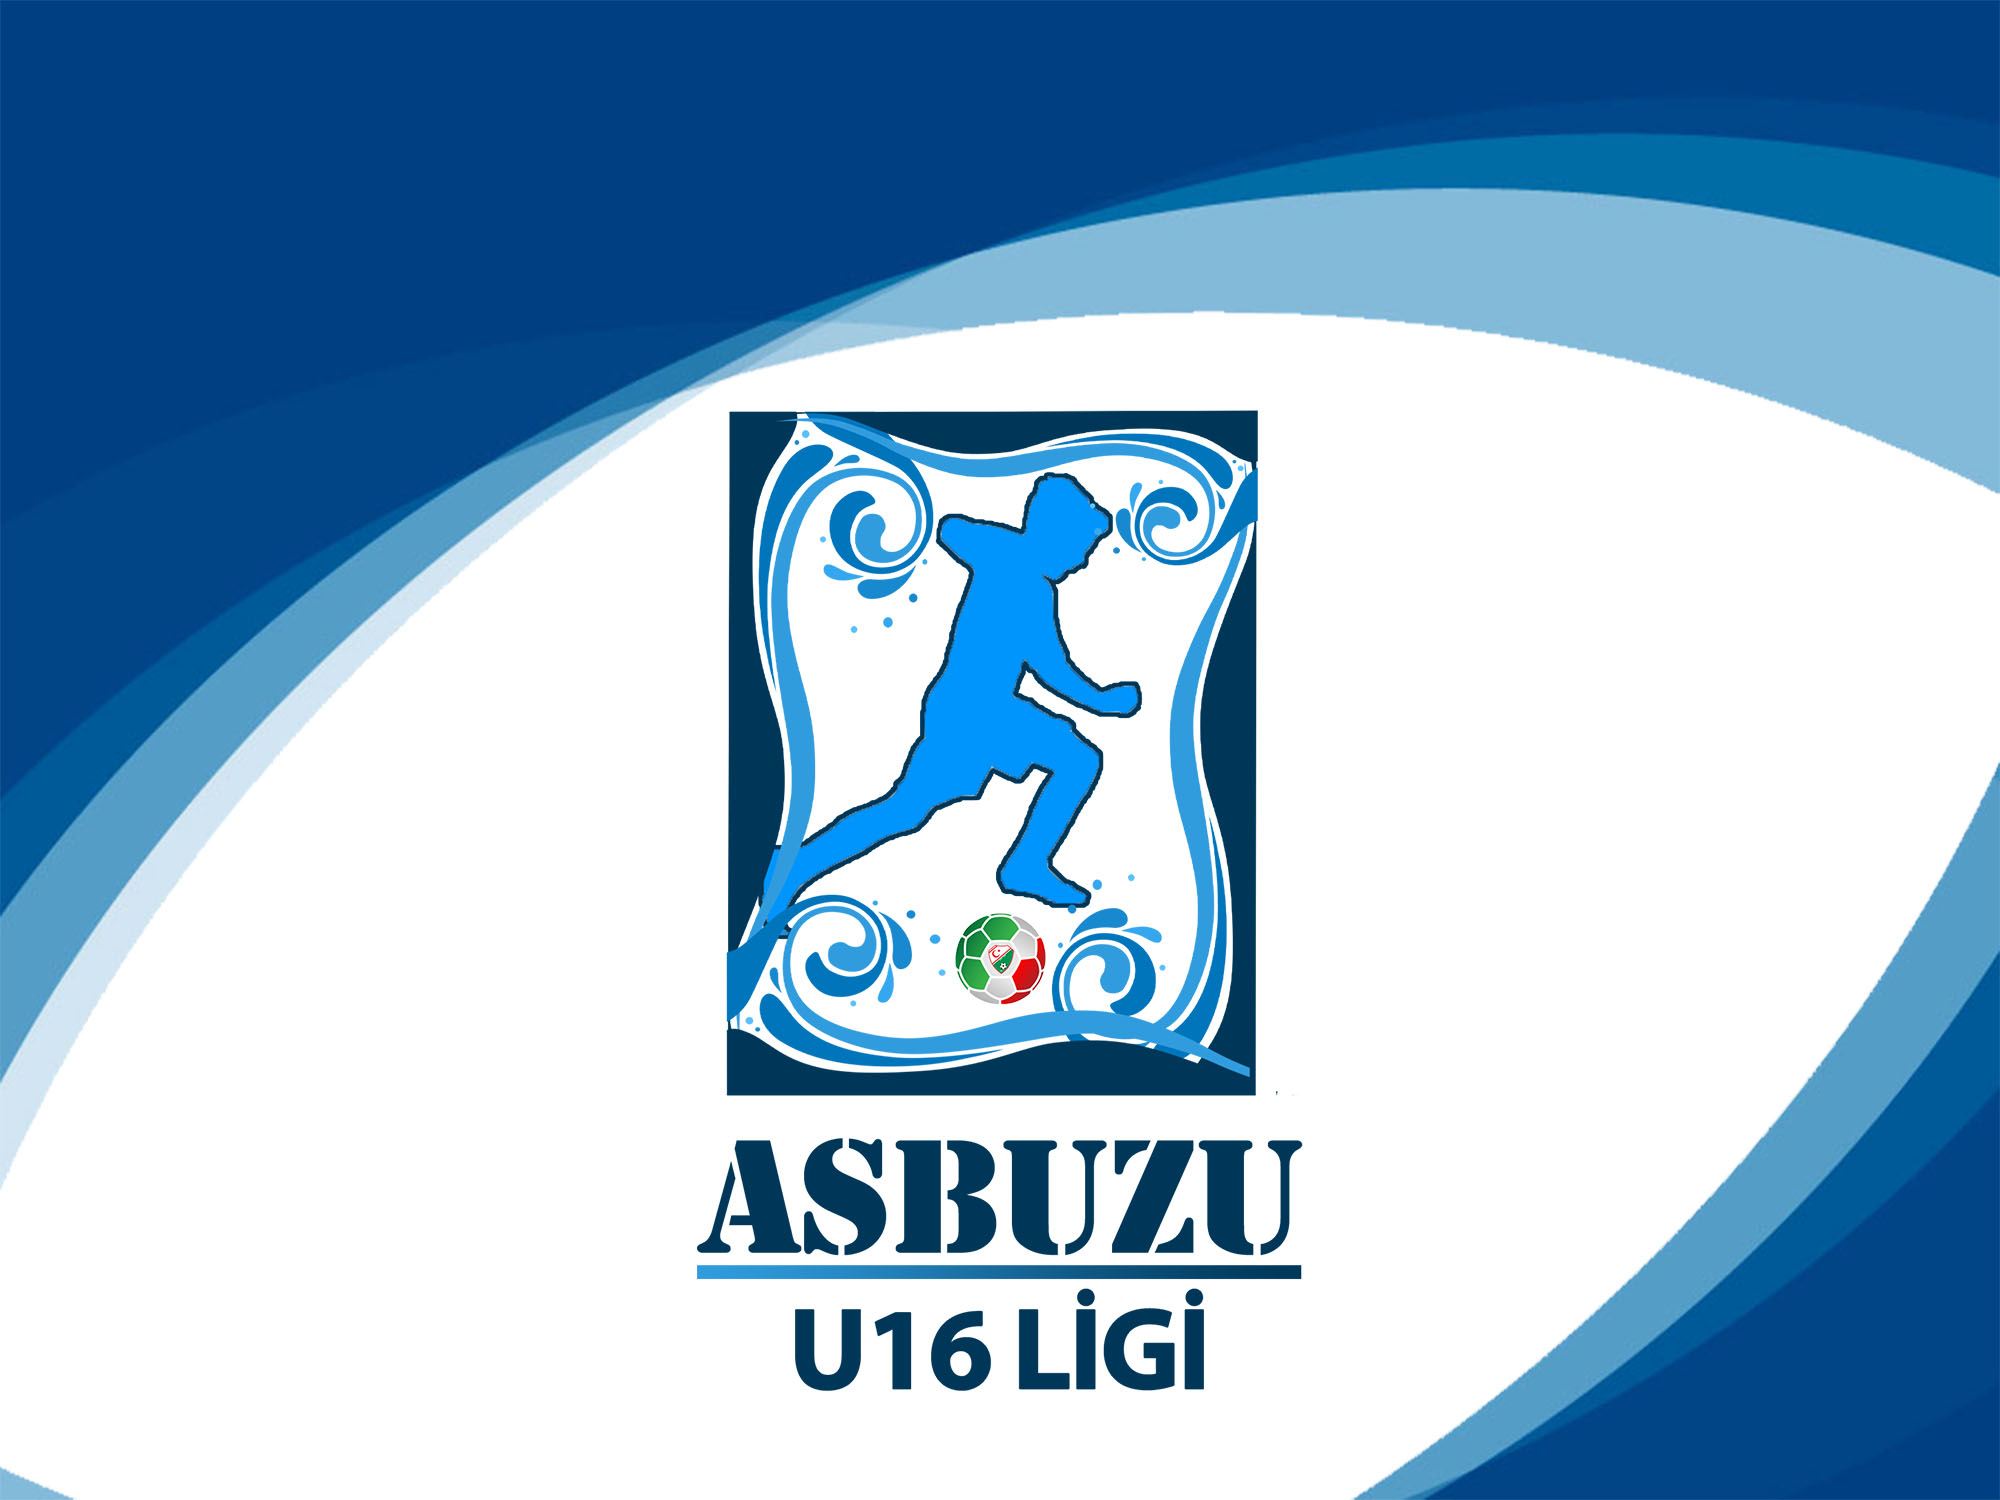 Asbuzu U16 Ligi'ne başvurular başladı